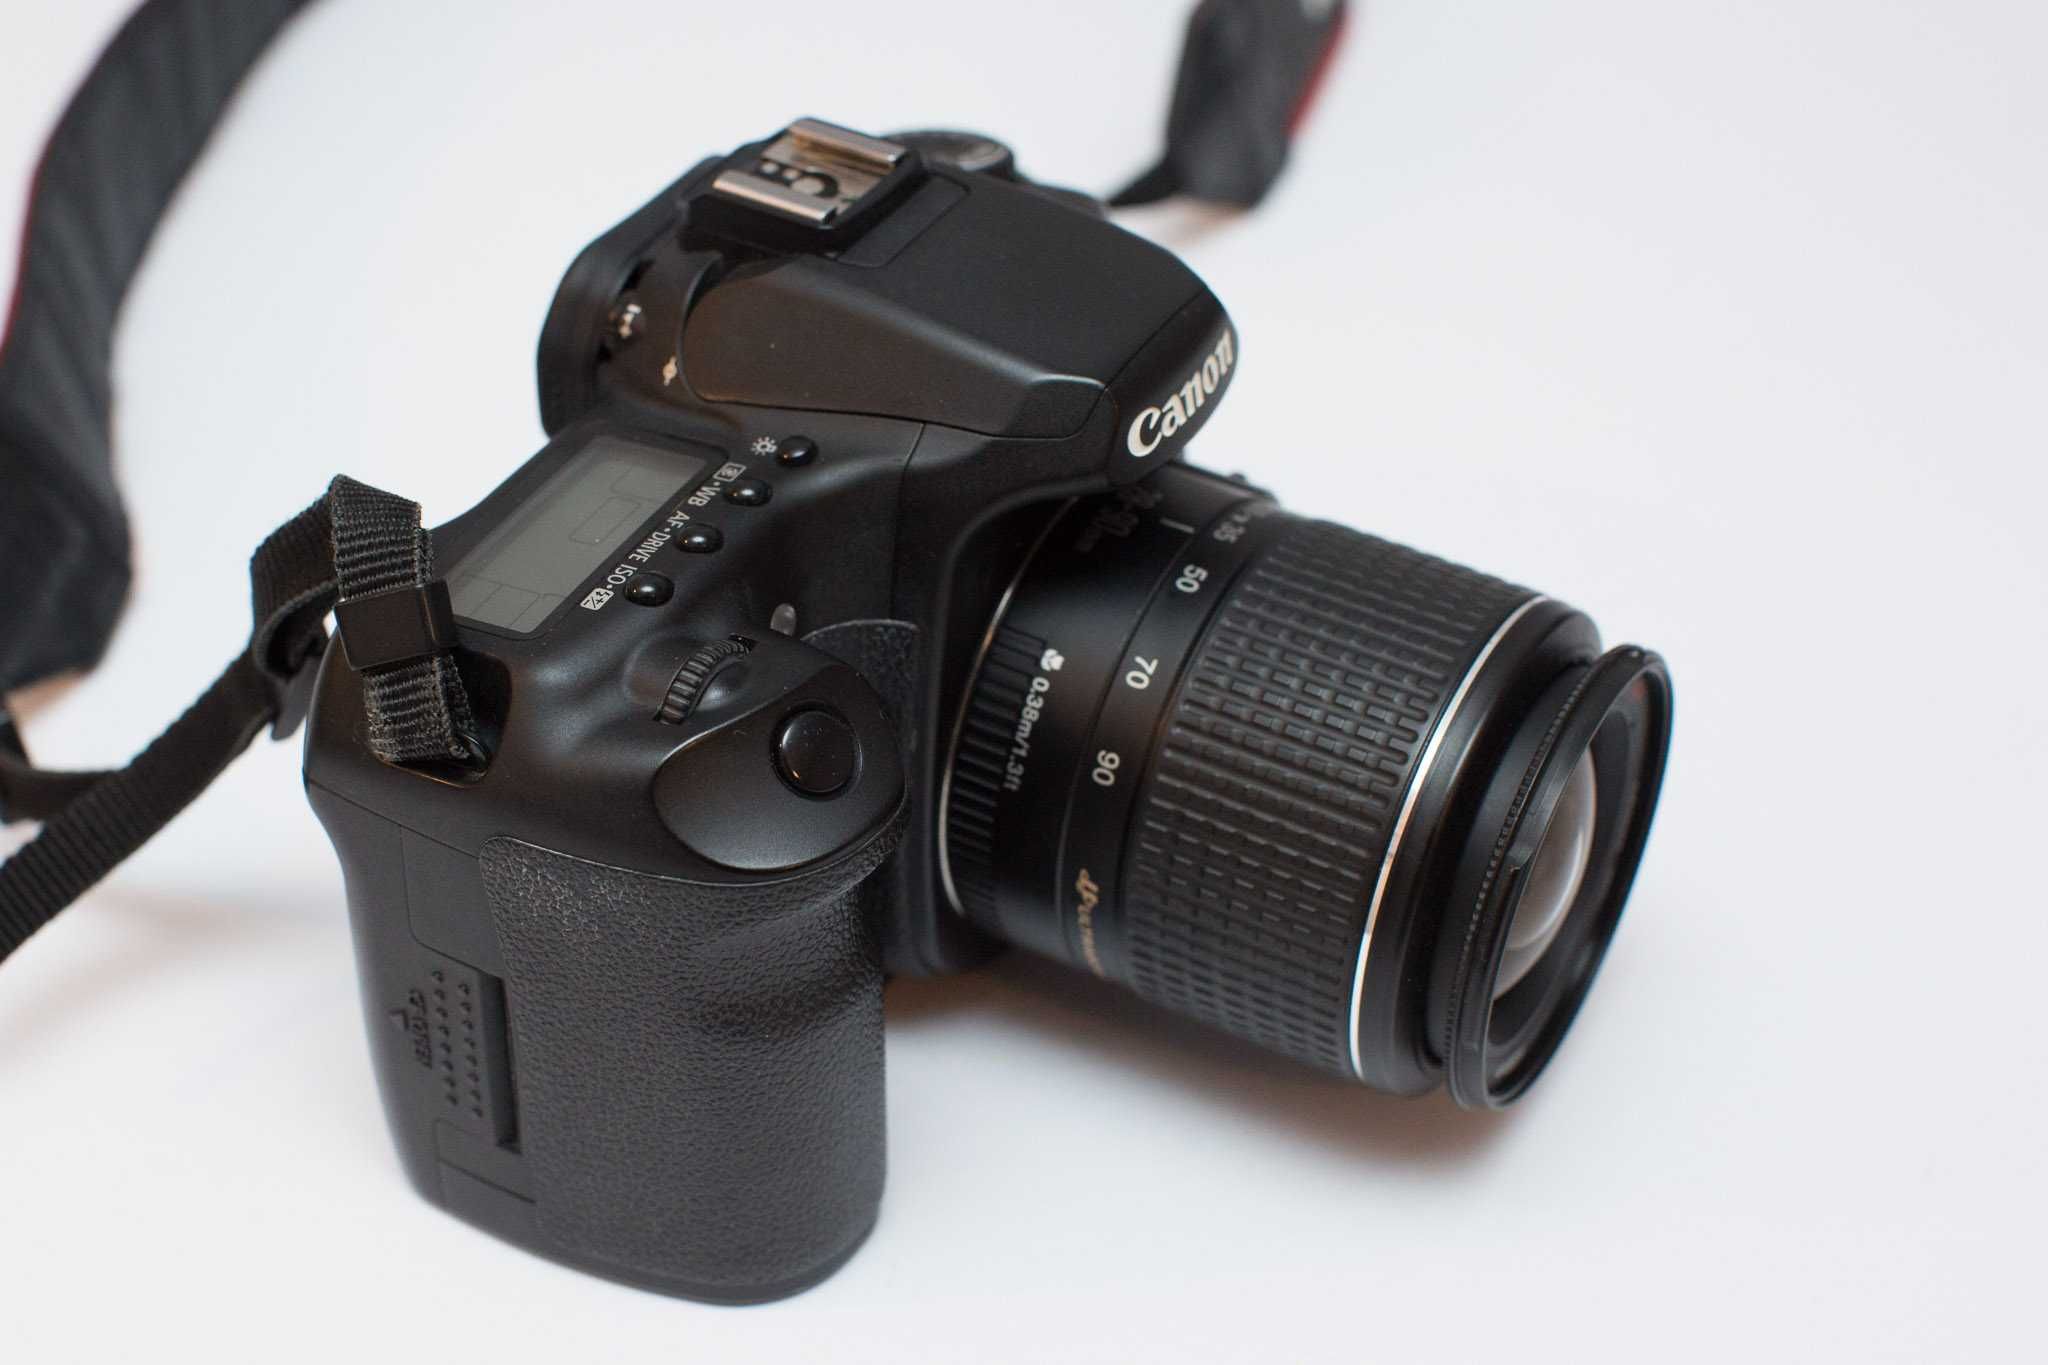 Canon EOS 40D + Canon EF 28-90 mm f/4-5.6 + dwie karty + ładowarka